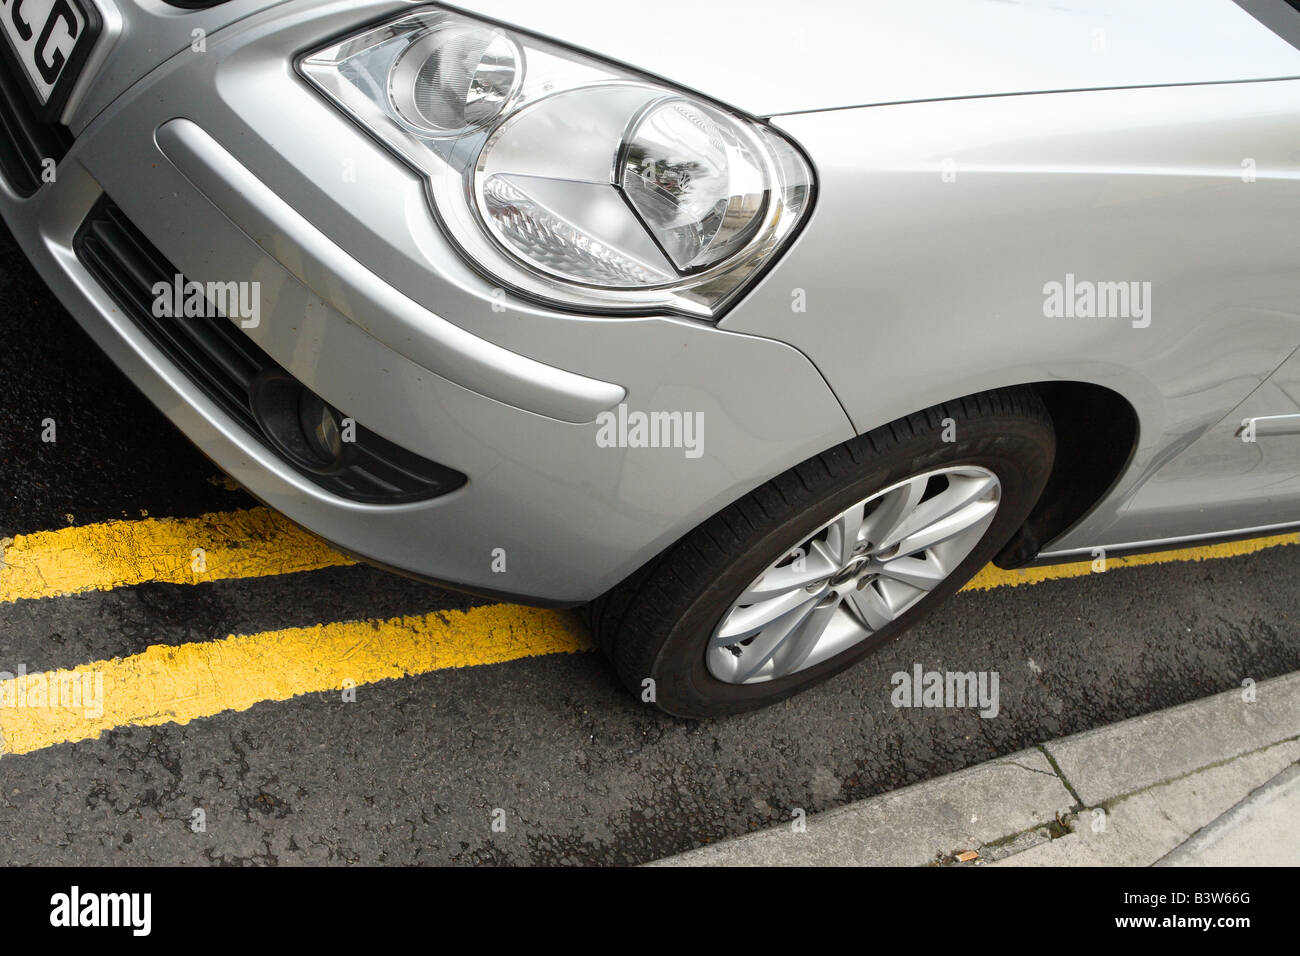 Auto geparkt auf doppelte gelbe Linien keine Parkplatz-Linie Stockfoto